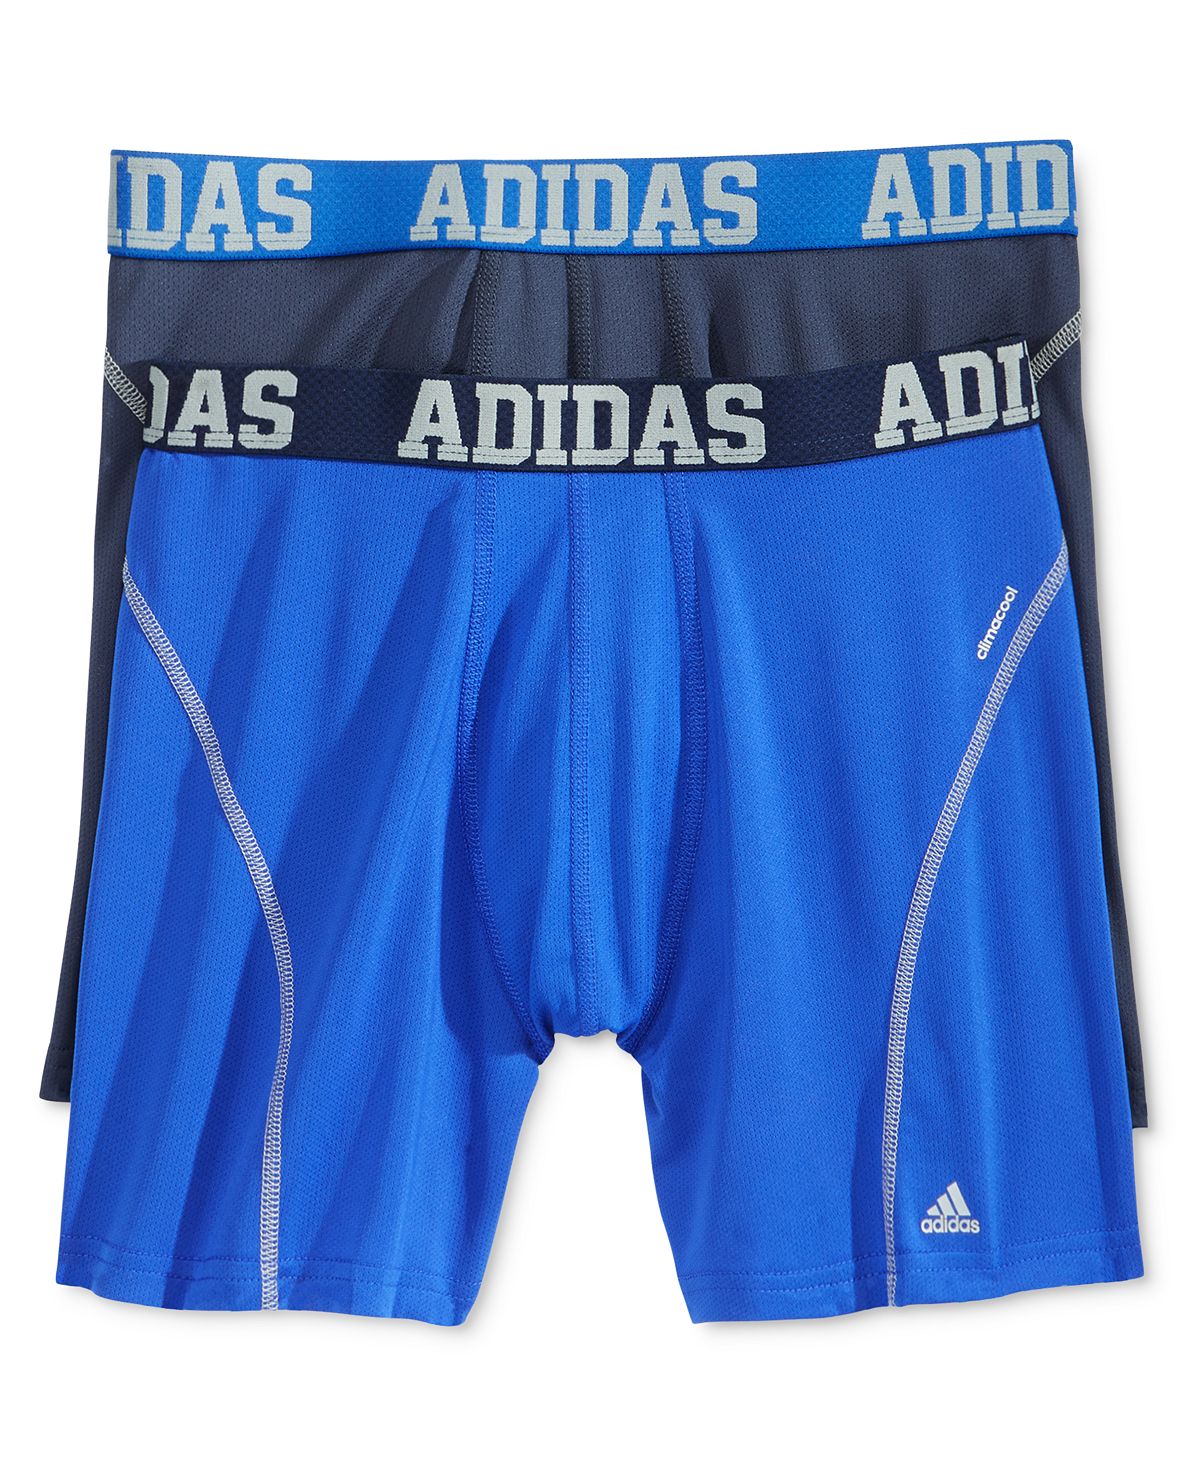 adidas Men's Sport Performance Boxer Brief Underwear (2-Pack